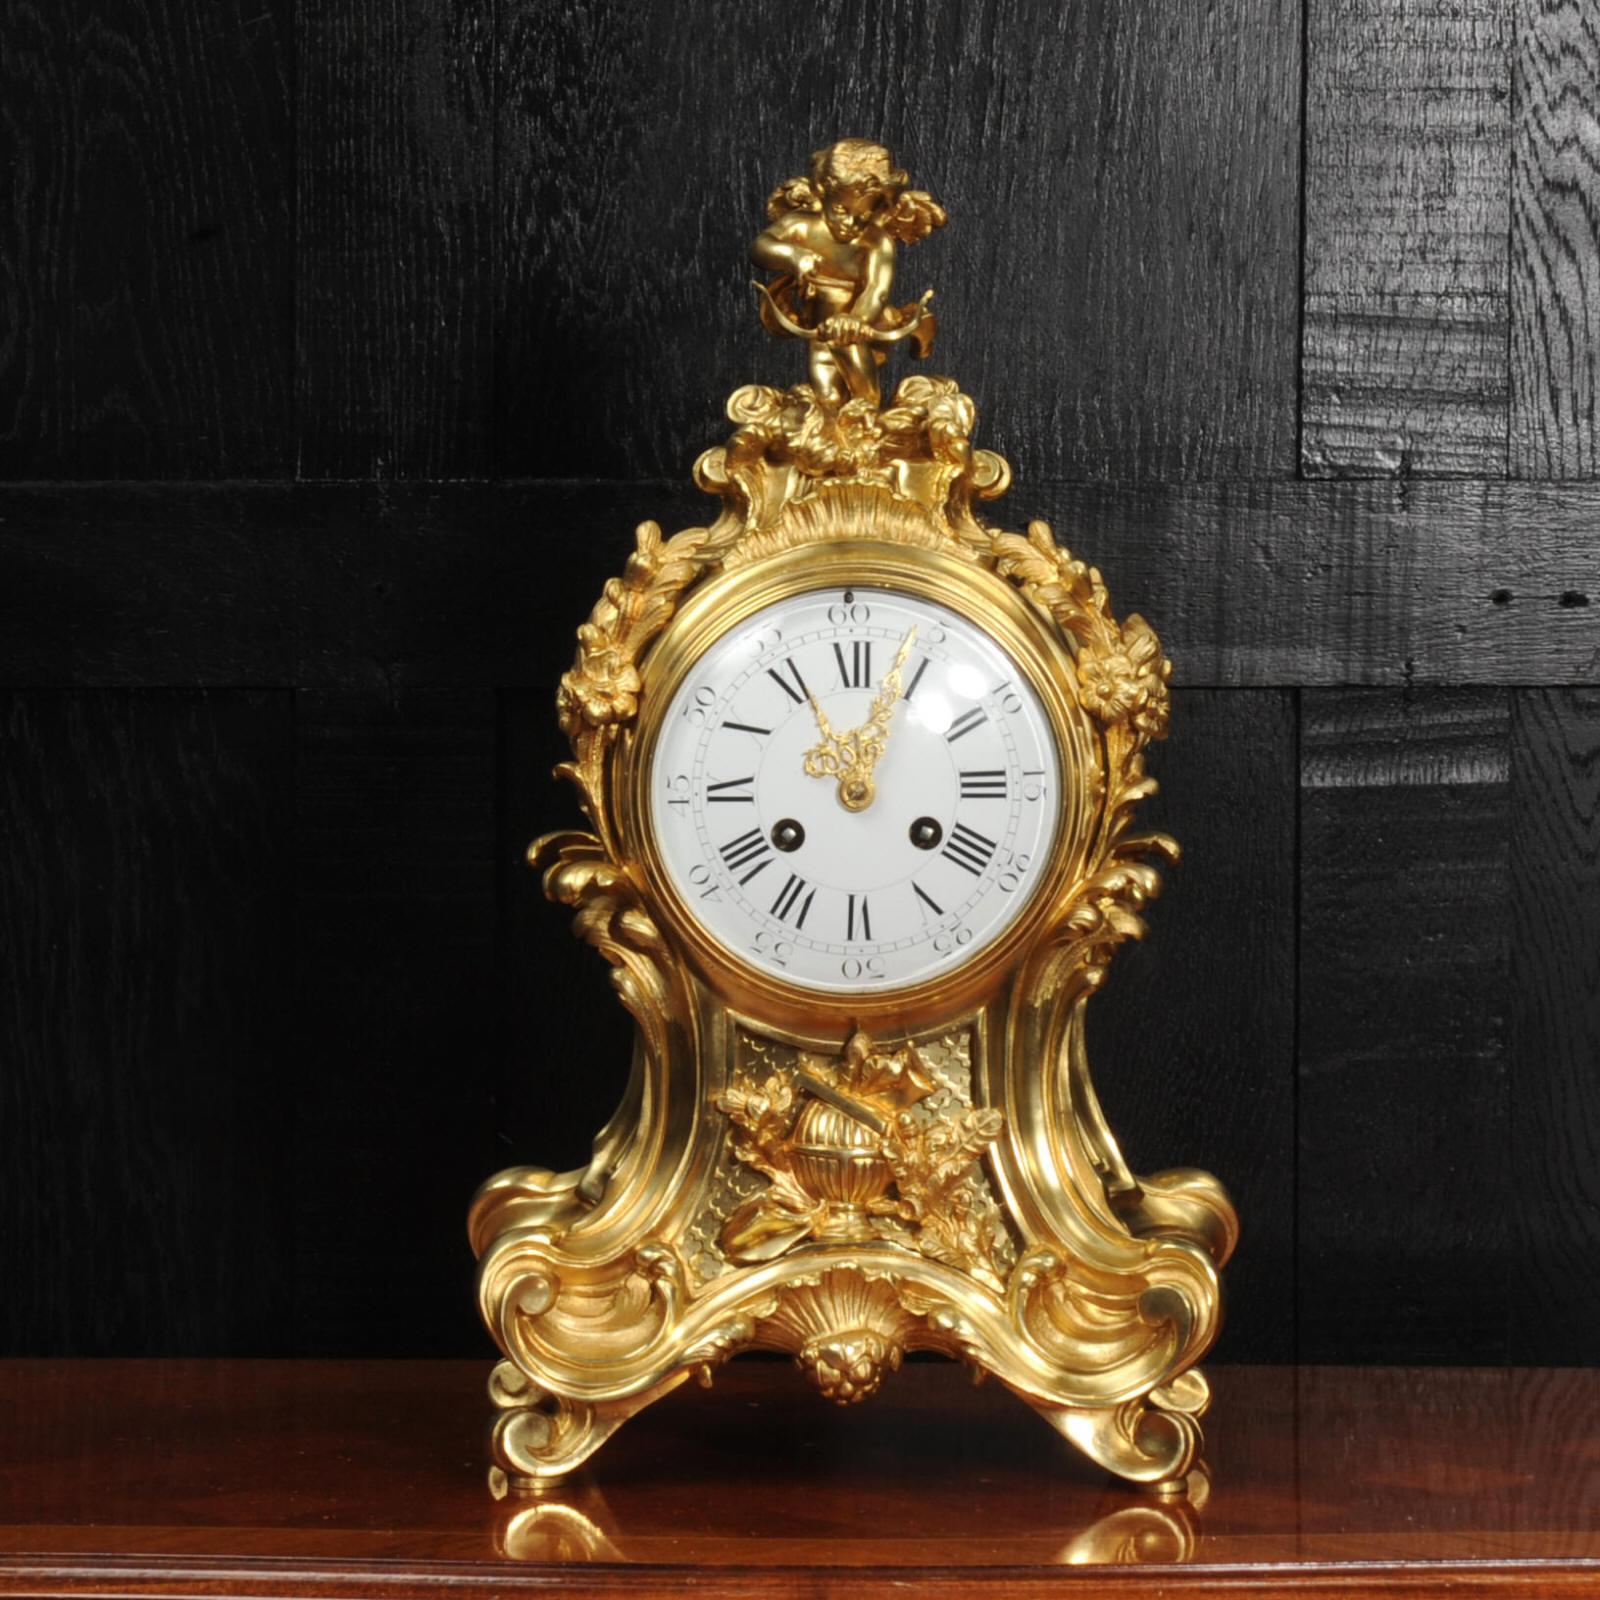 Une très belle et substantielle horloge en bronze doré de l'horloger Vincenti. Superbe forme de ballon rococo composée d'acanthes, de volutes et d'ornements floraux. Au sommet d'une figure magnifiquement modelée de cupidon, tirant en arrière sur son